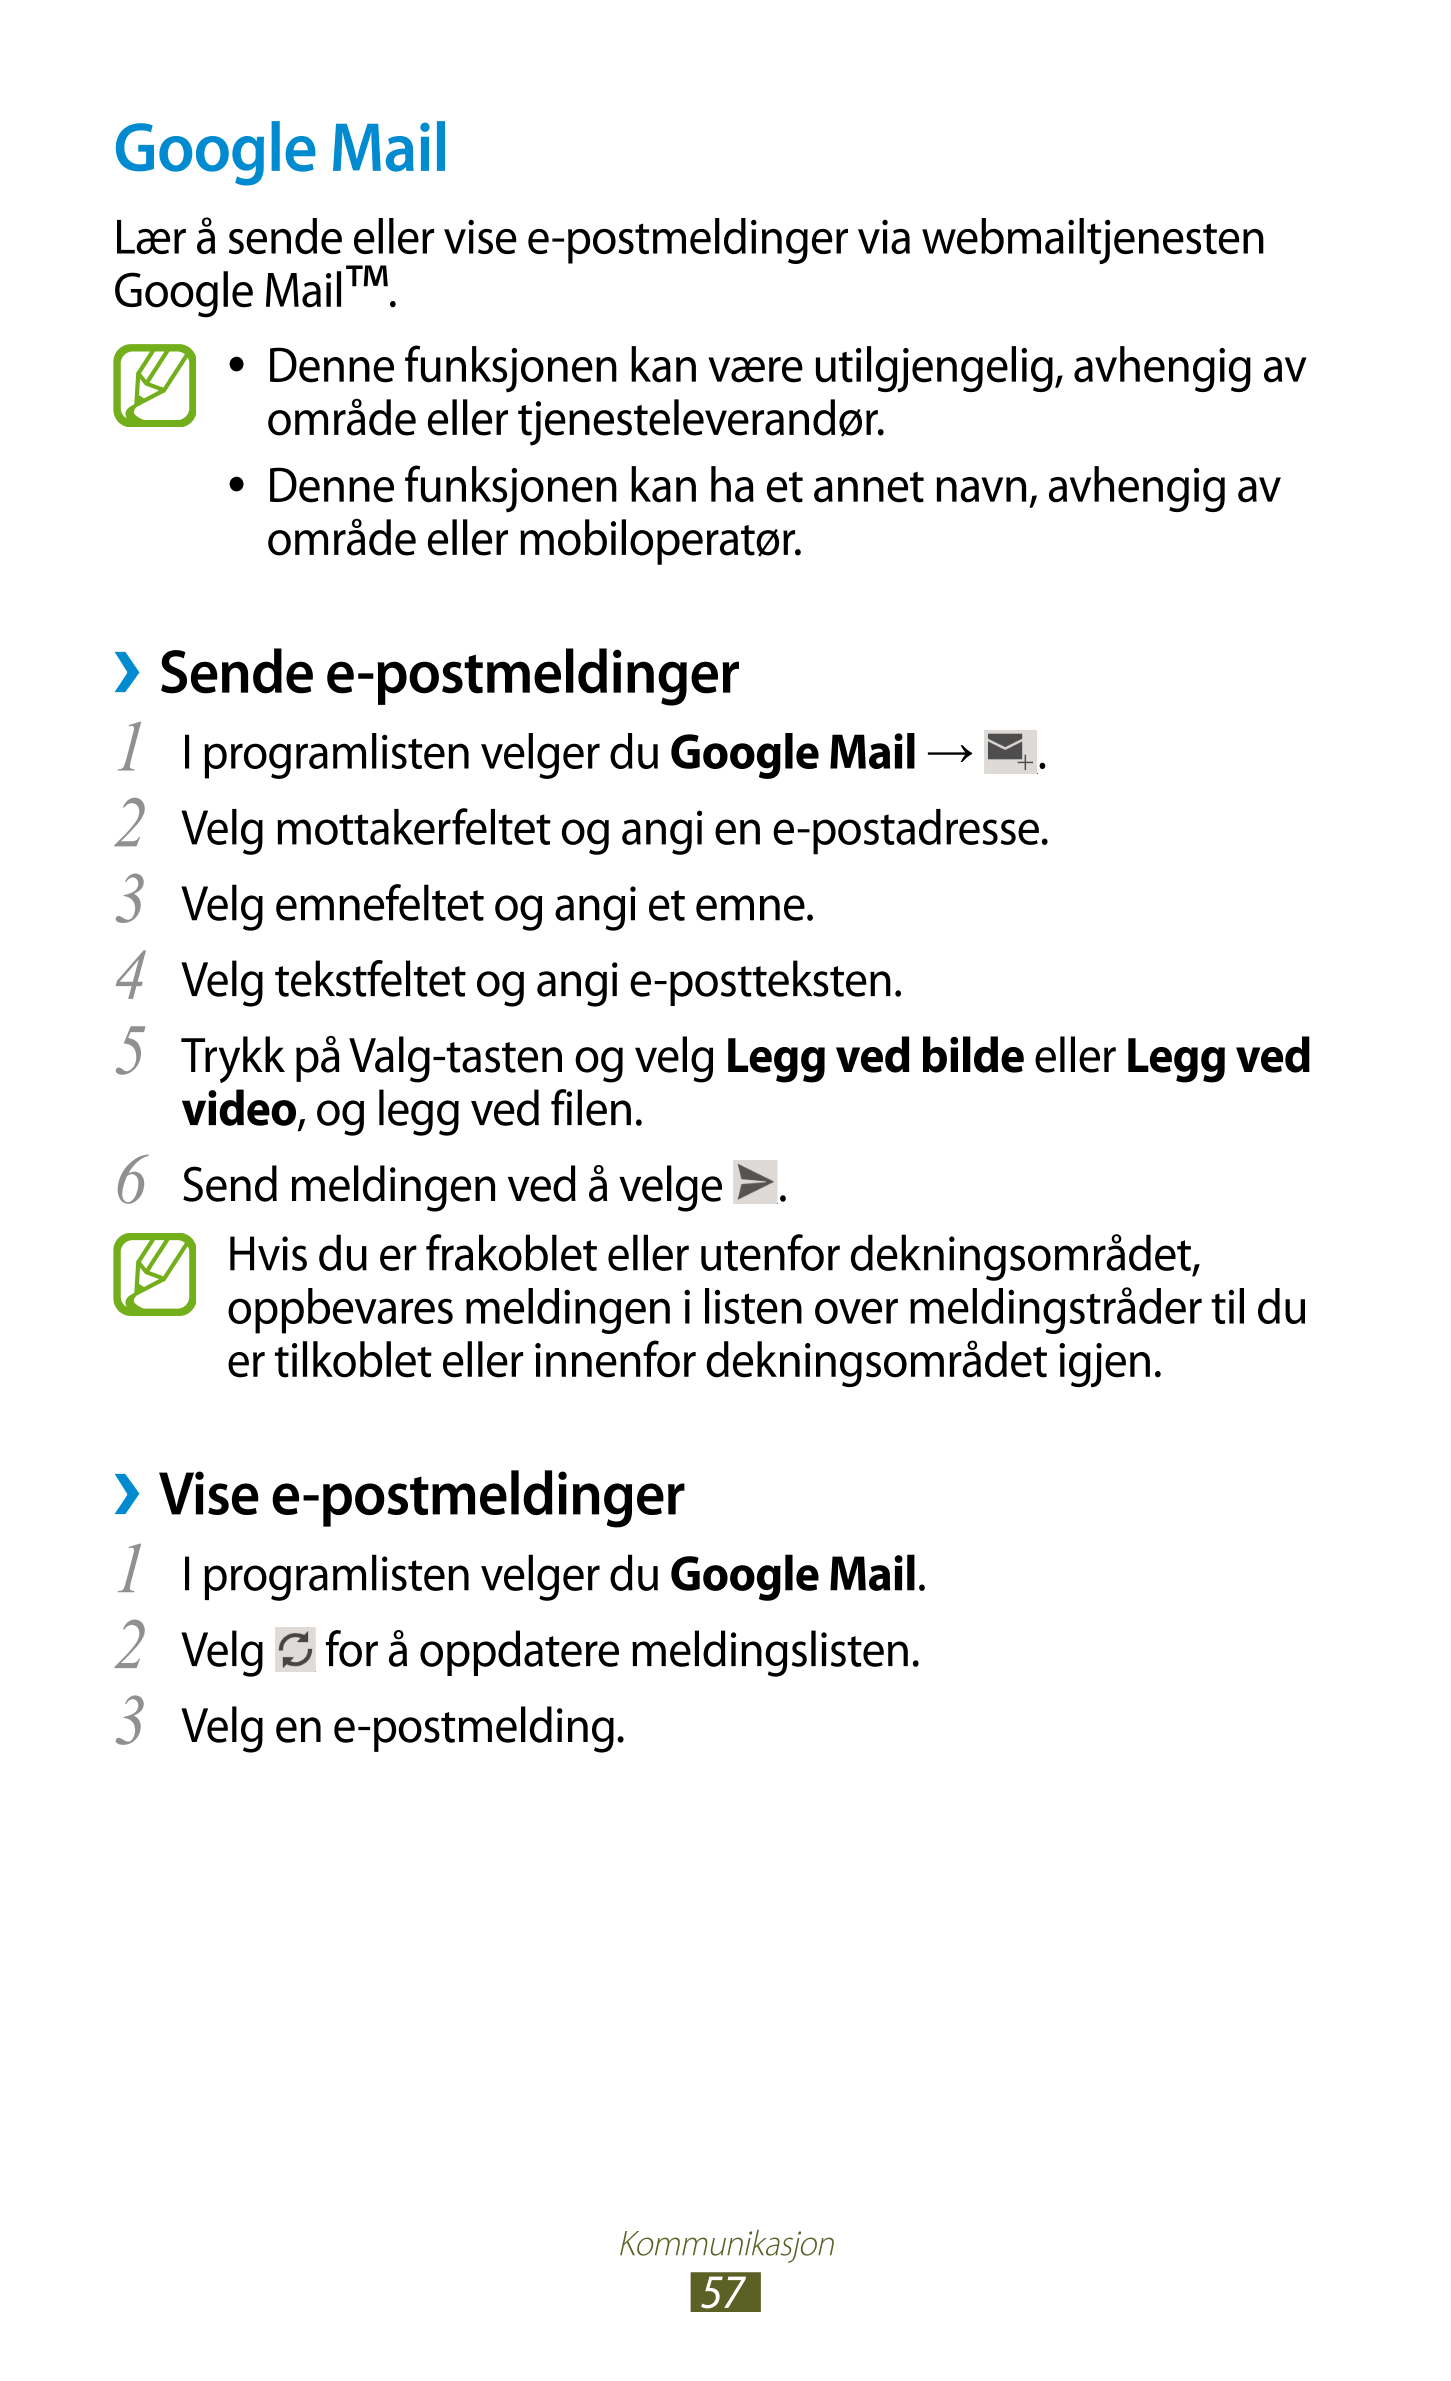 Google Mail
Lær å sende eller vise e-postmeldinger via webmailtjenesten 
Google Mail™. 
● Denne funksjonen kan være utilgjengeli